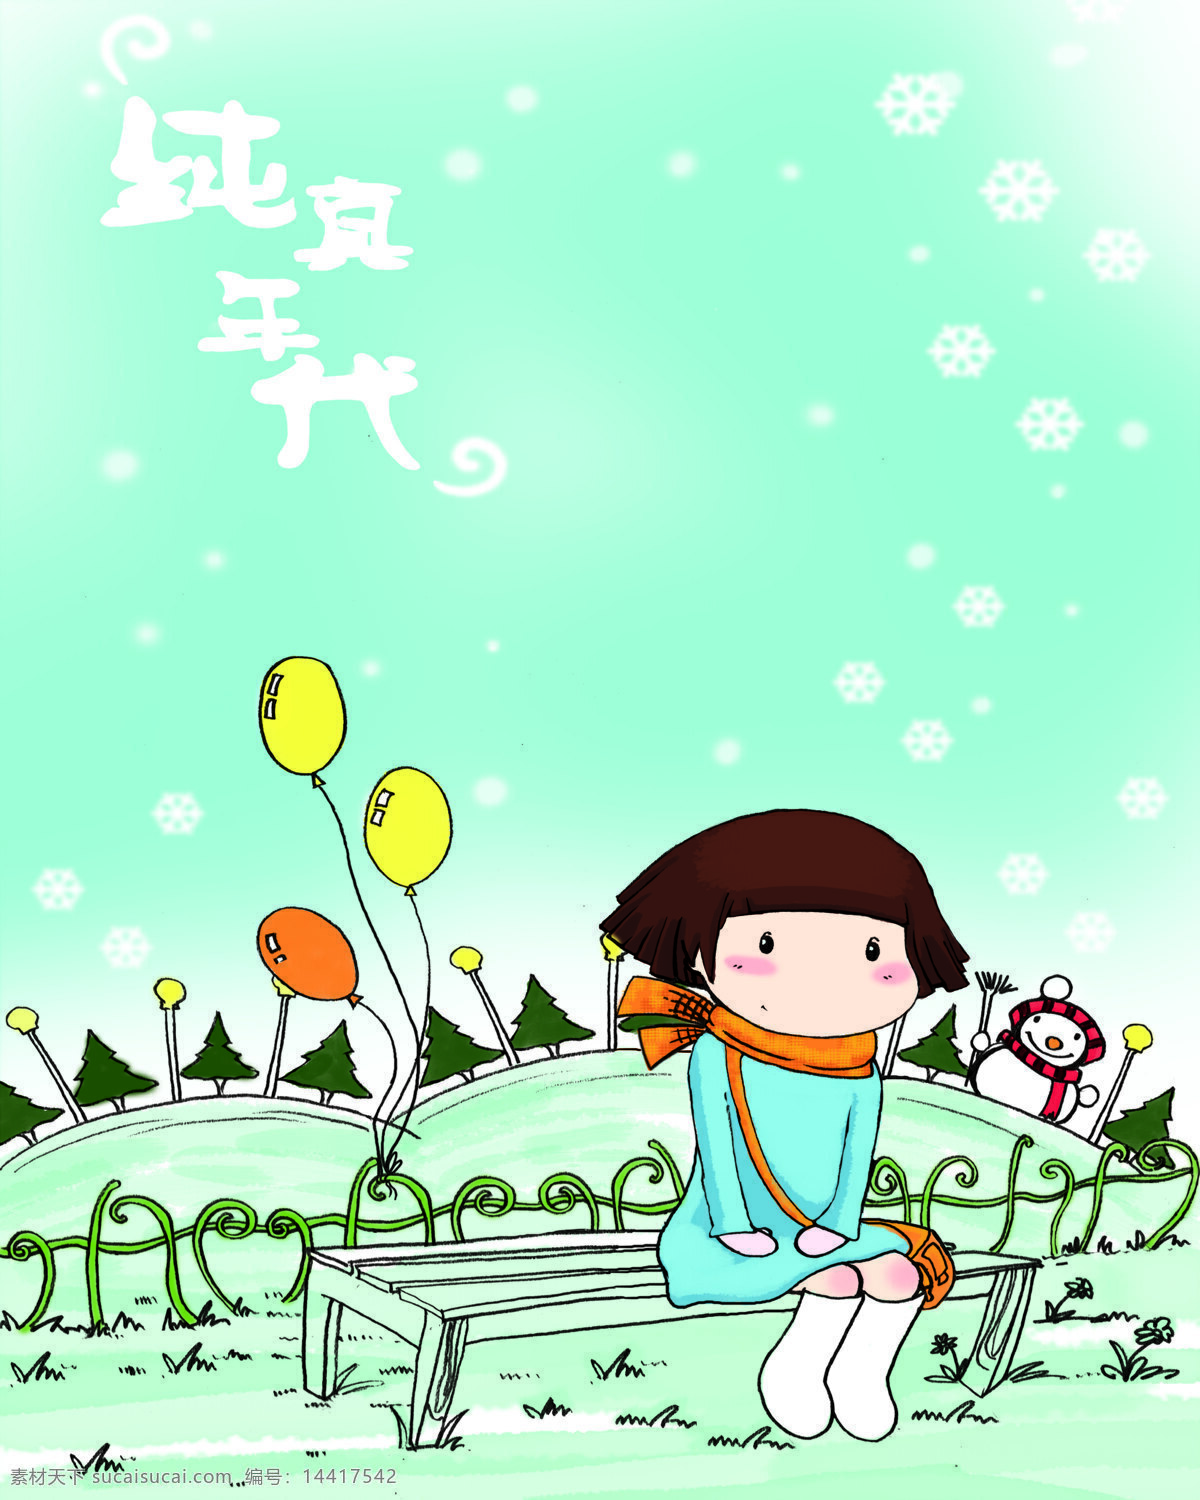 纯真年代 绿色的背景 小女孩 凳子 气球 雪人 雪花 树 字 移门图案 底纹边框